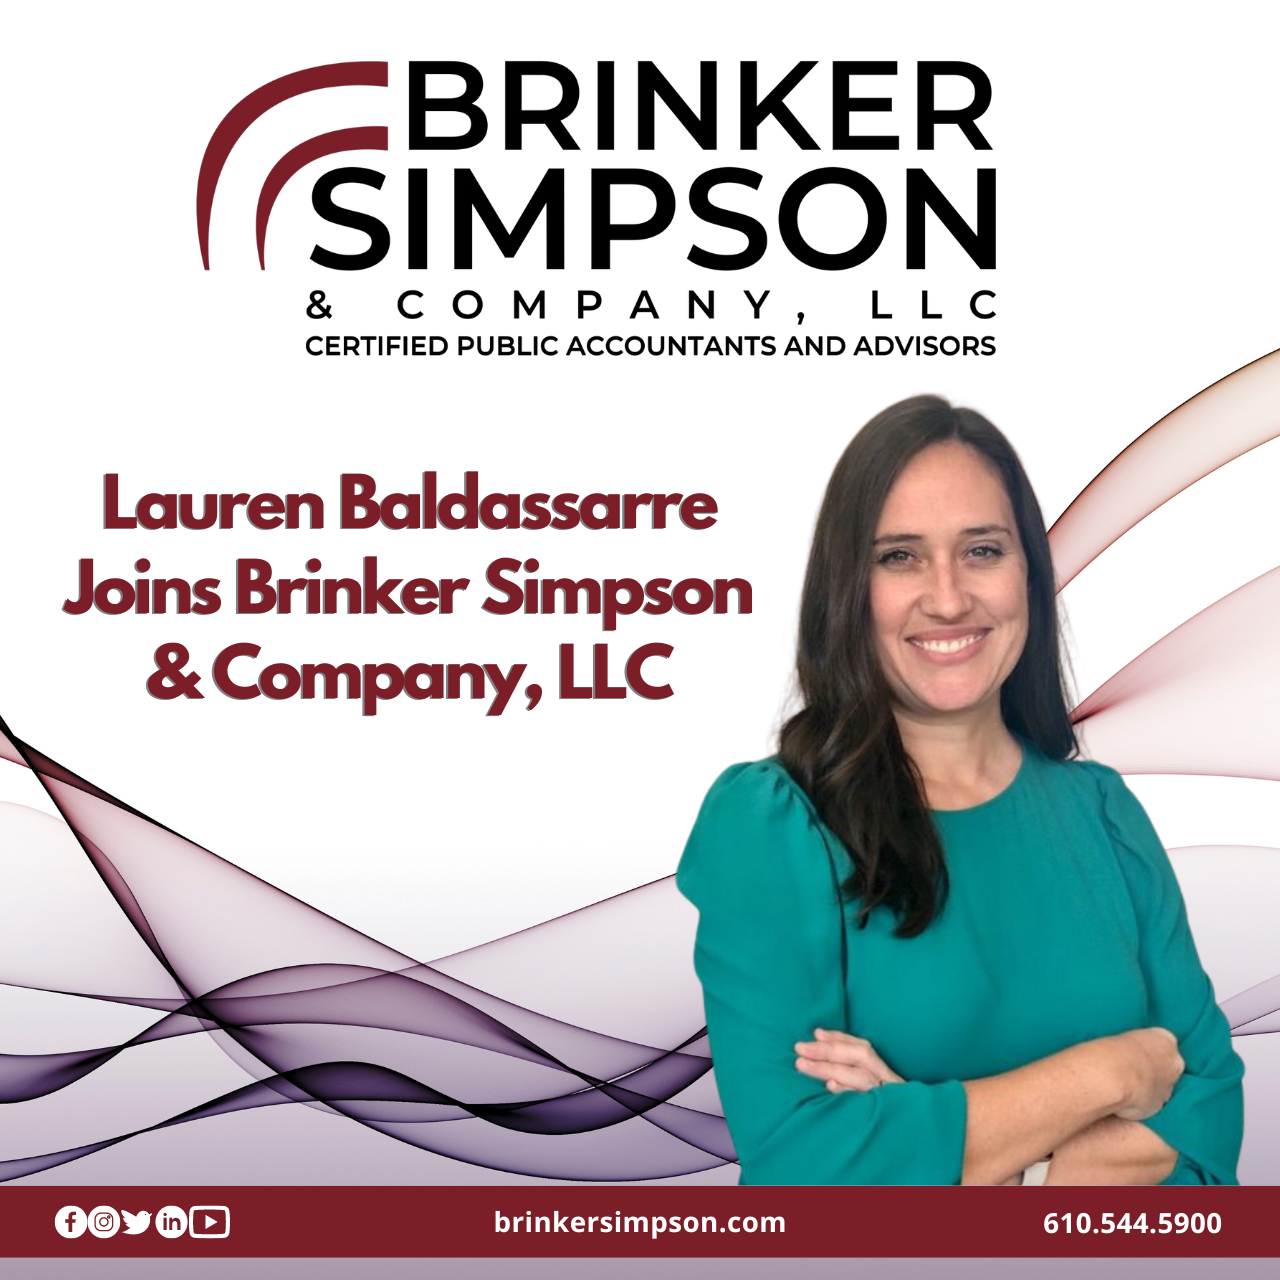 Lauren Baldassarre Joins Brinker Simpson & Company, LLC